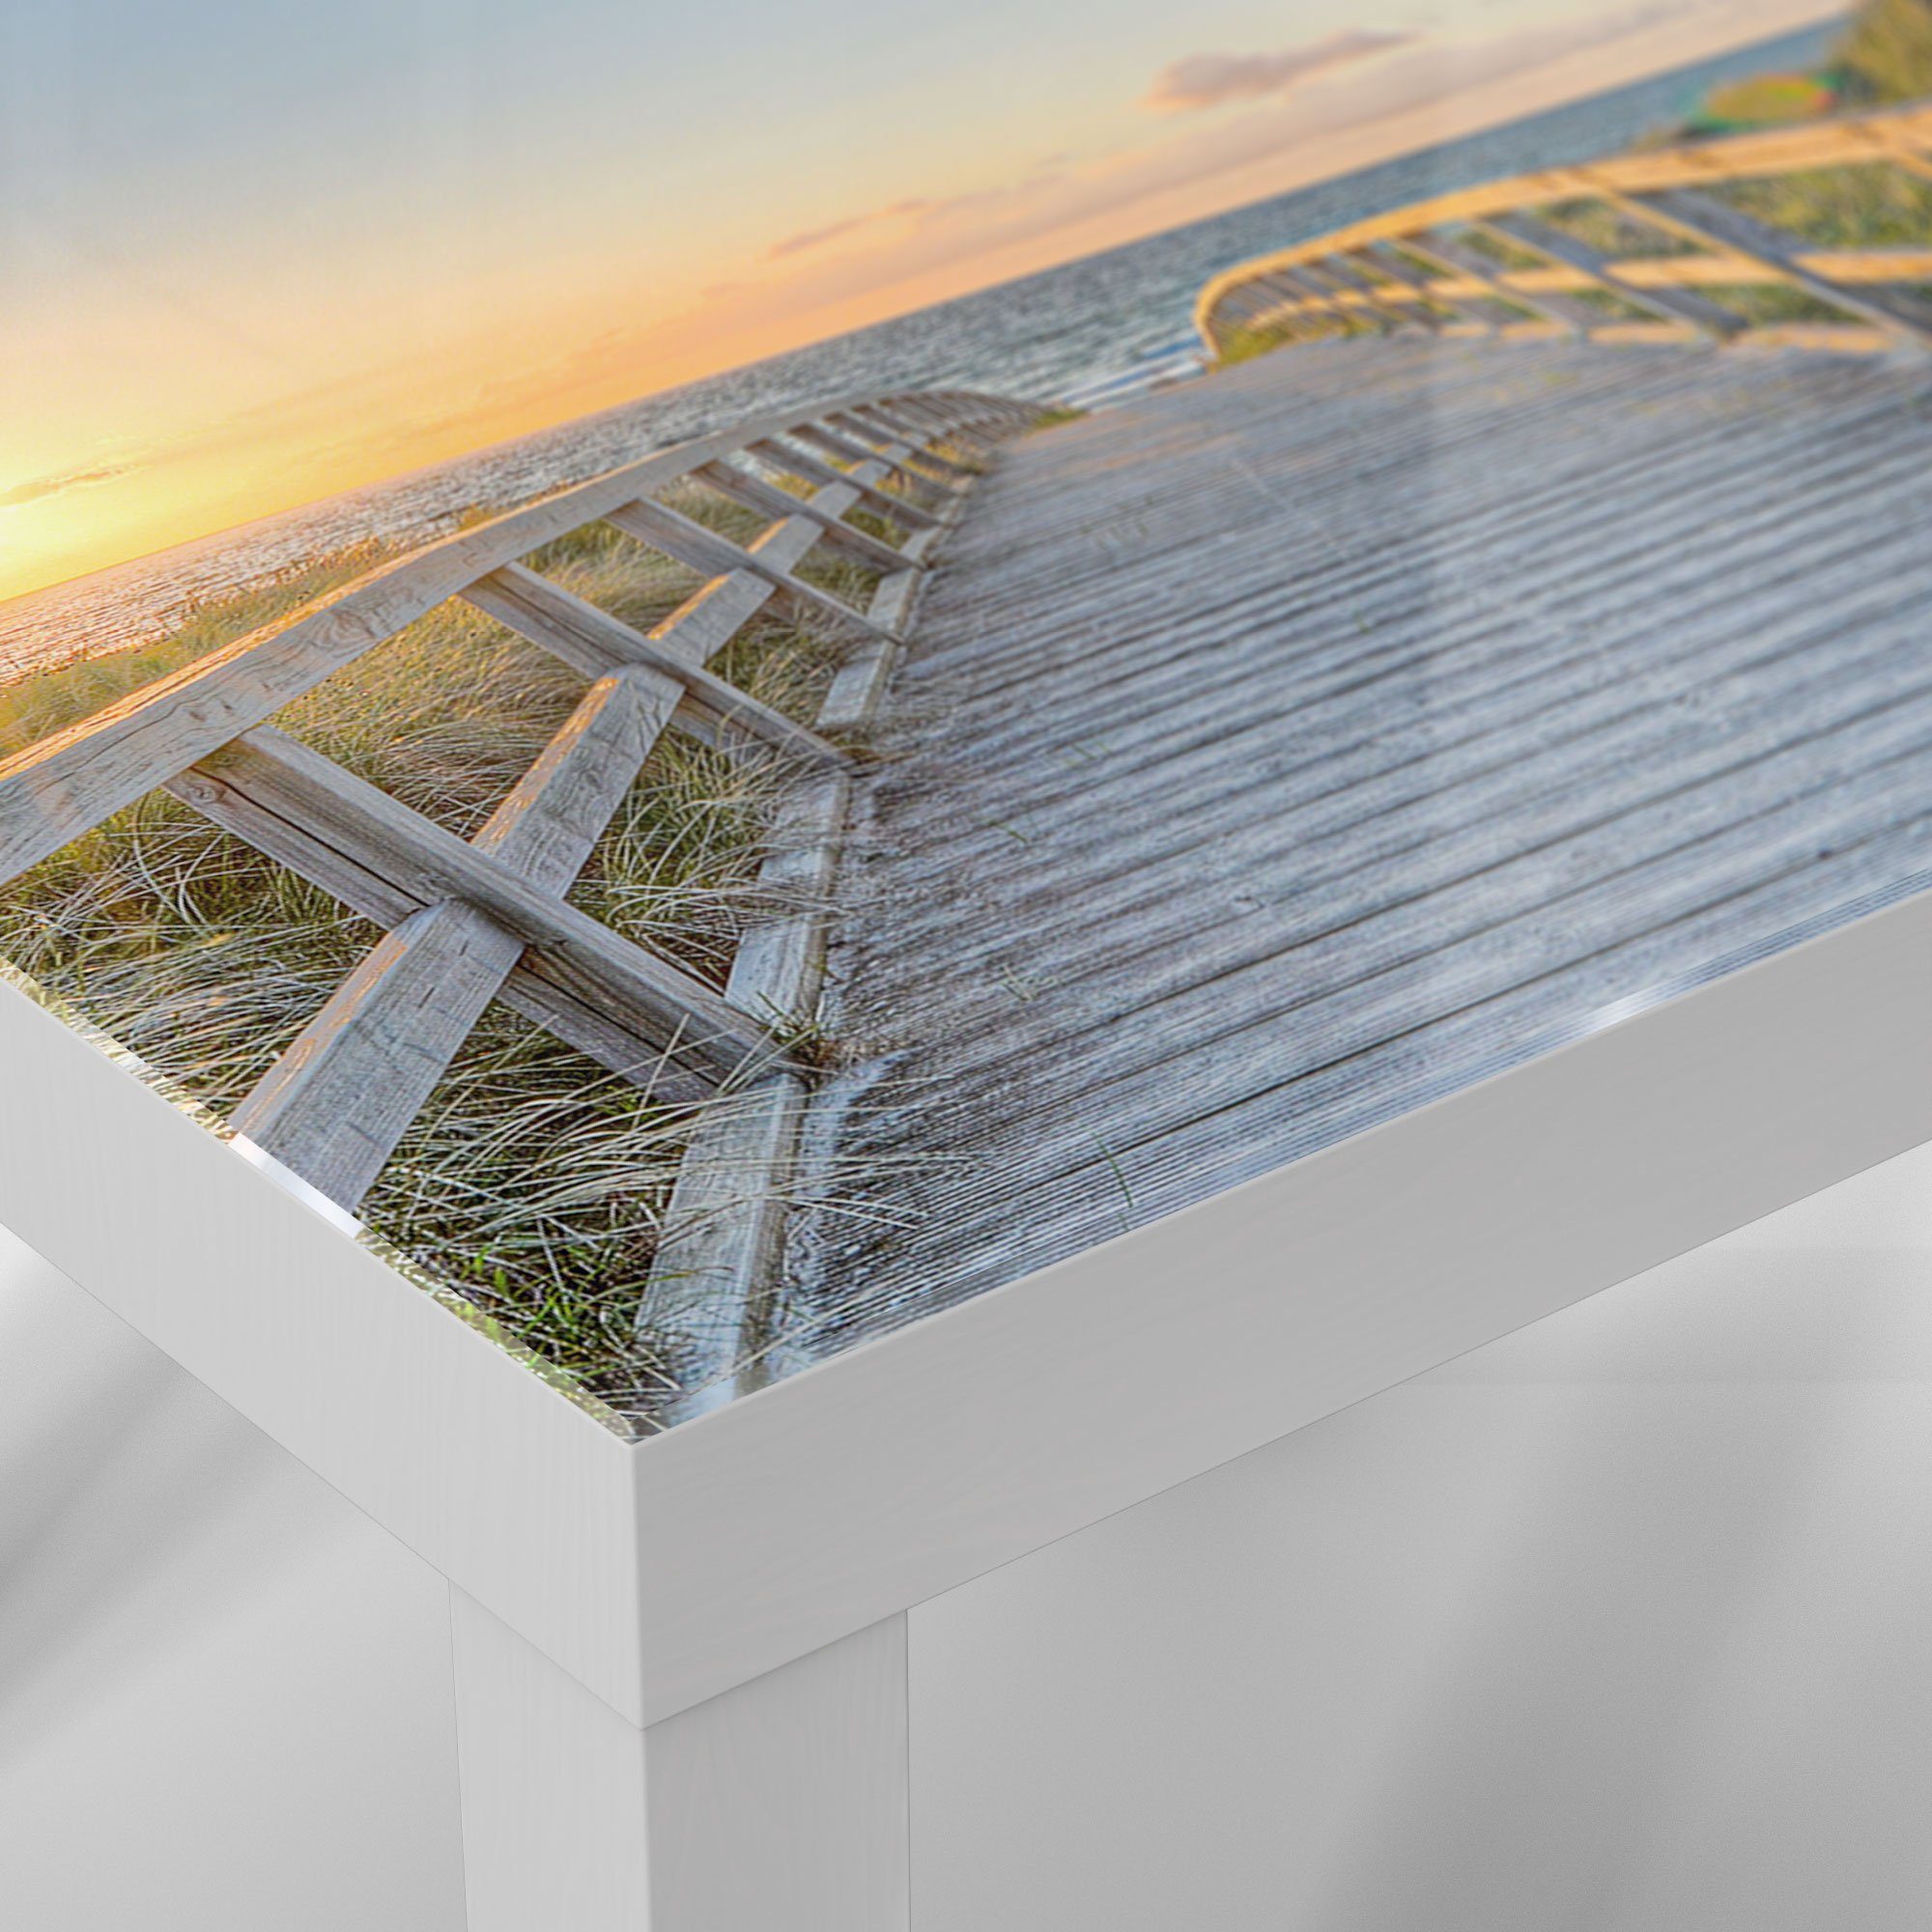 DEQORI Couchtisch 'Dünenweg Beistelltisch Weiß Glastisch zum Meer', modern Glas